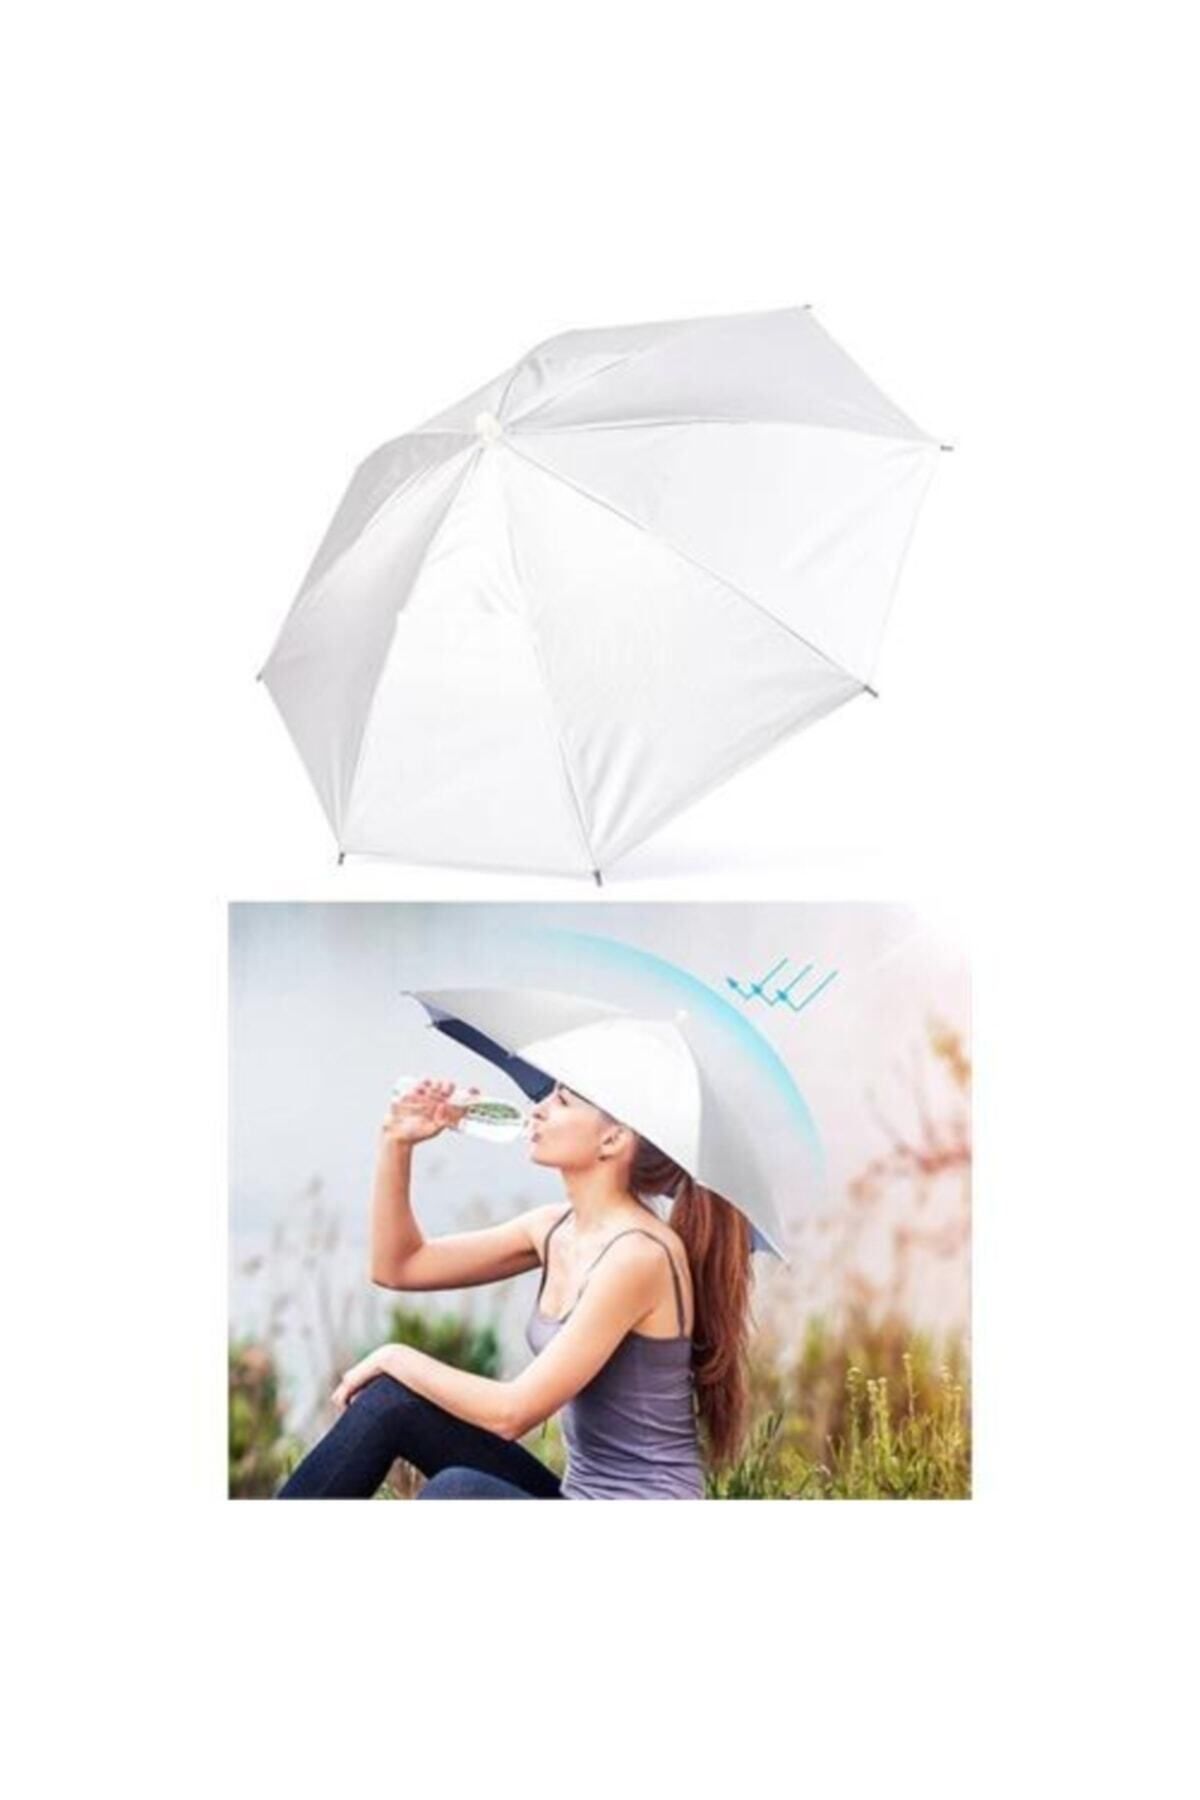 ELEVEN MARKETS Beyaz Lastikli Plaj Yazlık Kafa Şemsiyesi Güneşten Korunmak Için Şapka Şemsiye Güneş Koruyucu